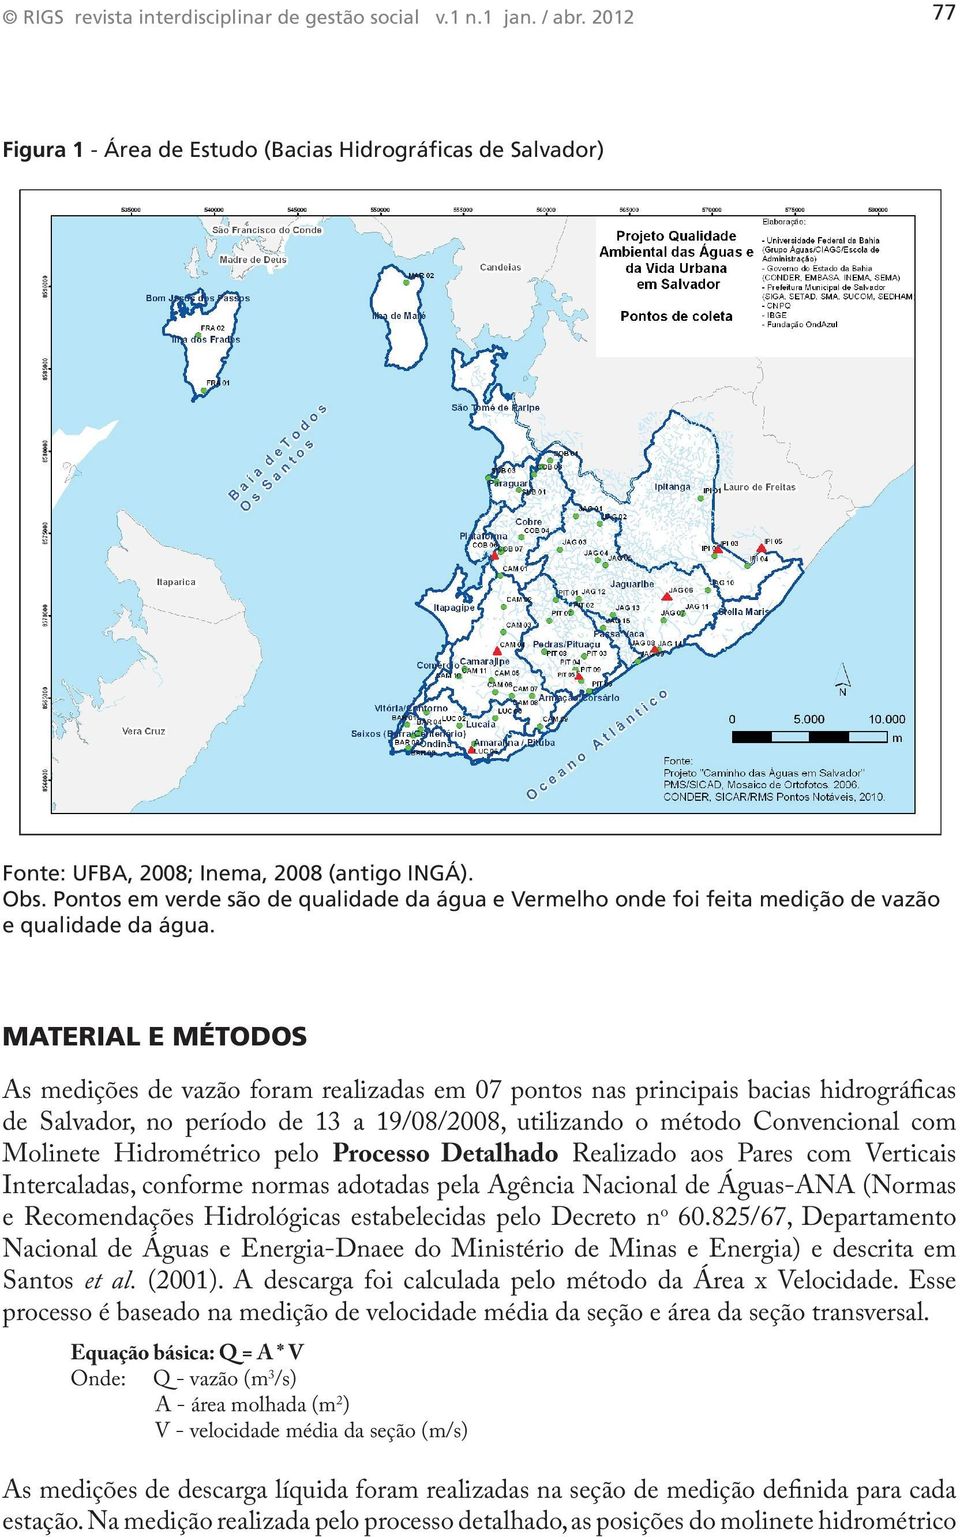 Material e Métodos As medições de vazão foram realizadas em 07 pontos nas principais bacias hidrográficas de Salvador, no período de 13 a 19/08/2008, utilizando o método Convencional com Molinete